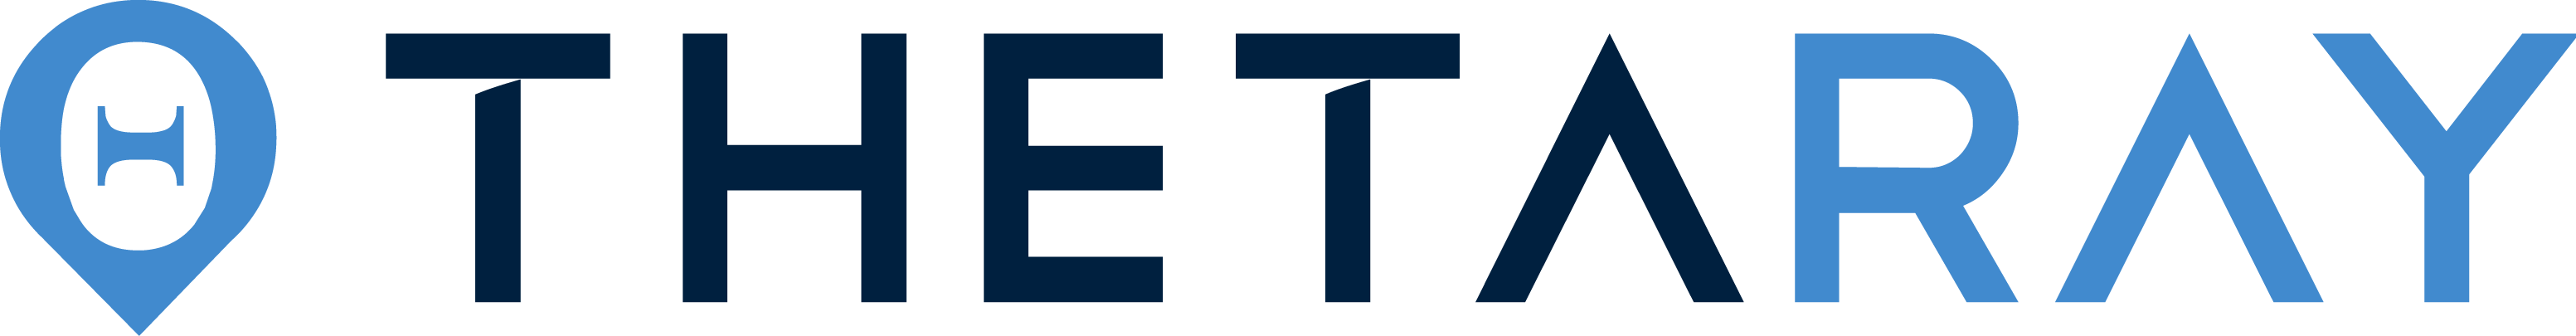 thetaray logo